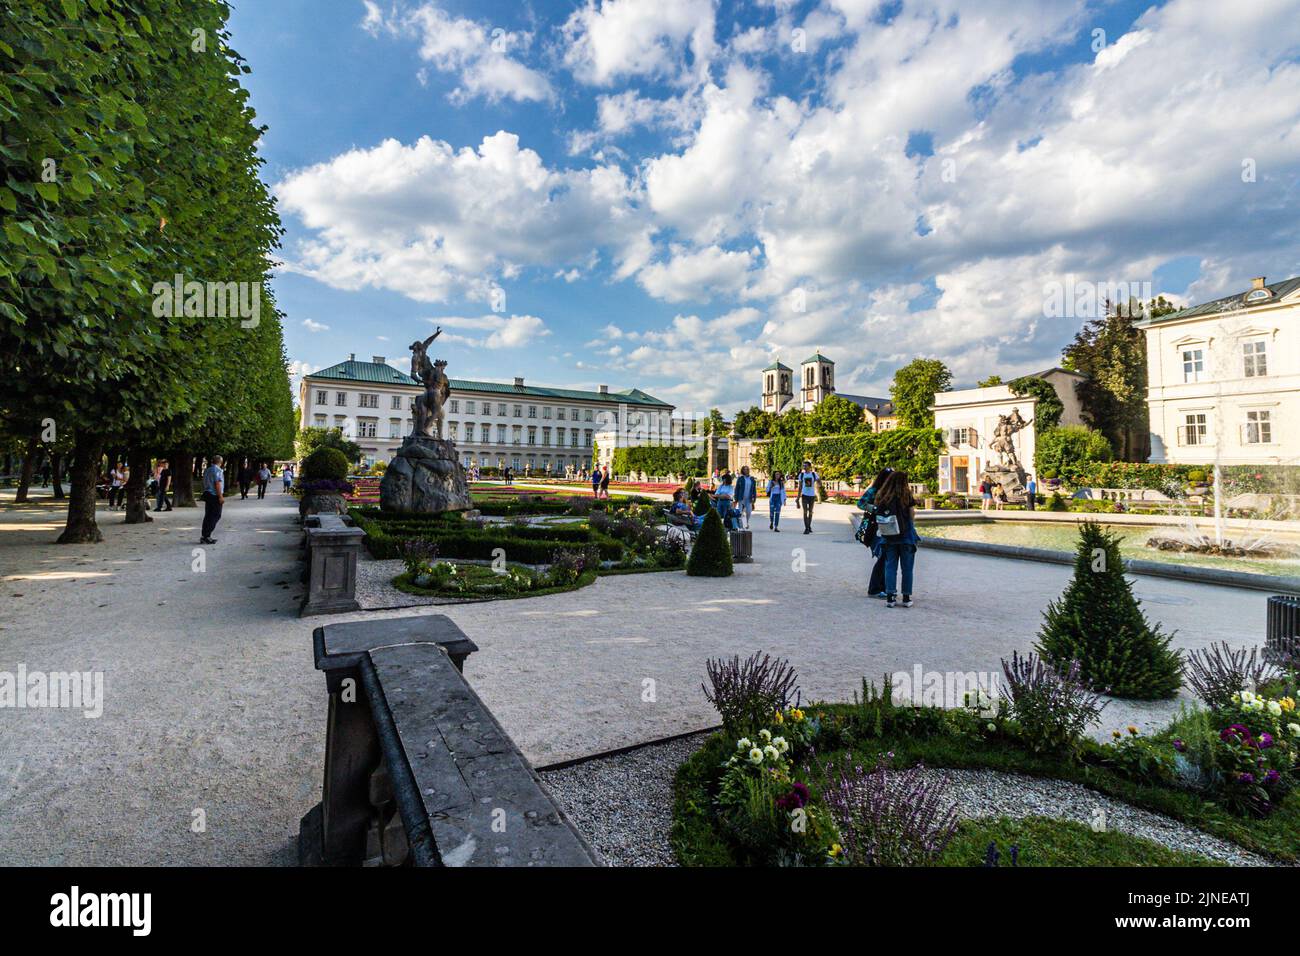 Die Menschen genießen es, in den berühmten Mirabellegärten in Salzburg zu spazieren Stockfoto